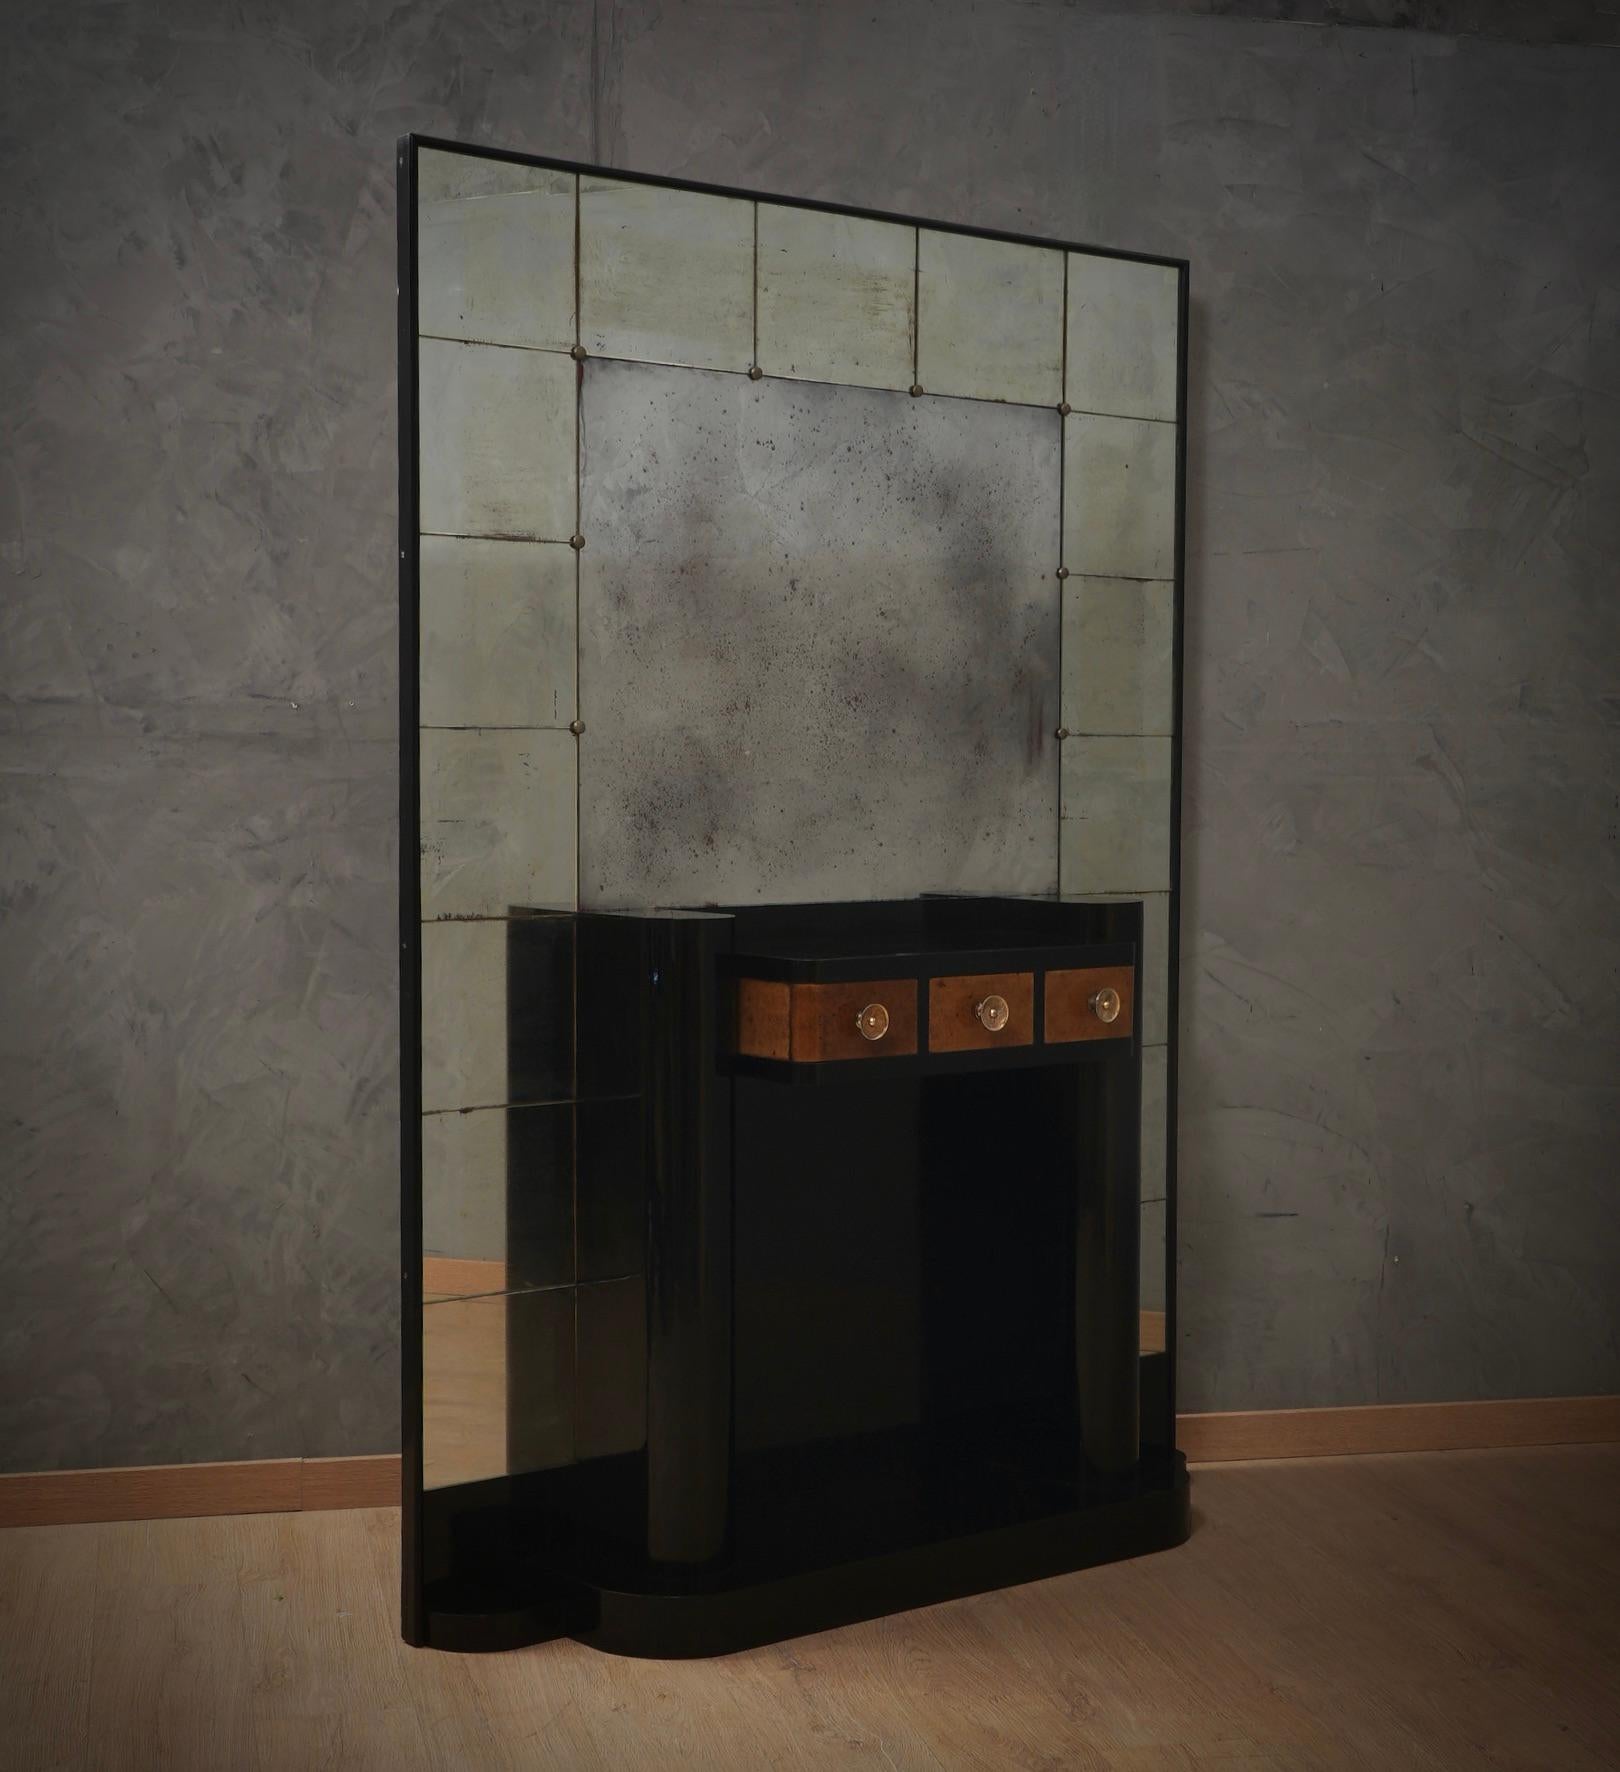 Schöne Spiegelkonsole im typisch italienischen Stil von Paolo Buffa, Vittorio Dassi und Osvaldo Borsani. Dieses Möbelstück hat ein sehr luxuriöses Aussehen und stammt sicherlich aus einem bedeutenden Haus in Rom. Das Möbelstück ist von großer